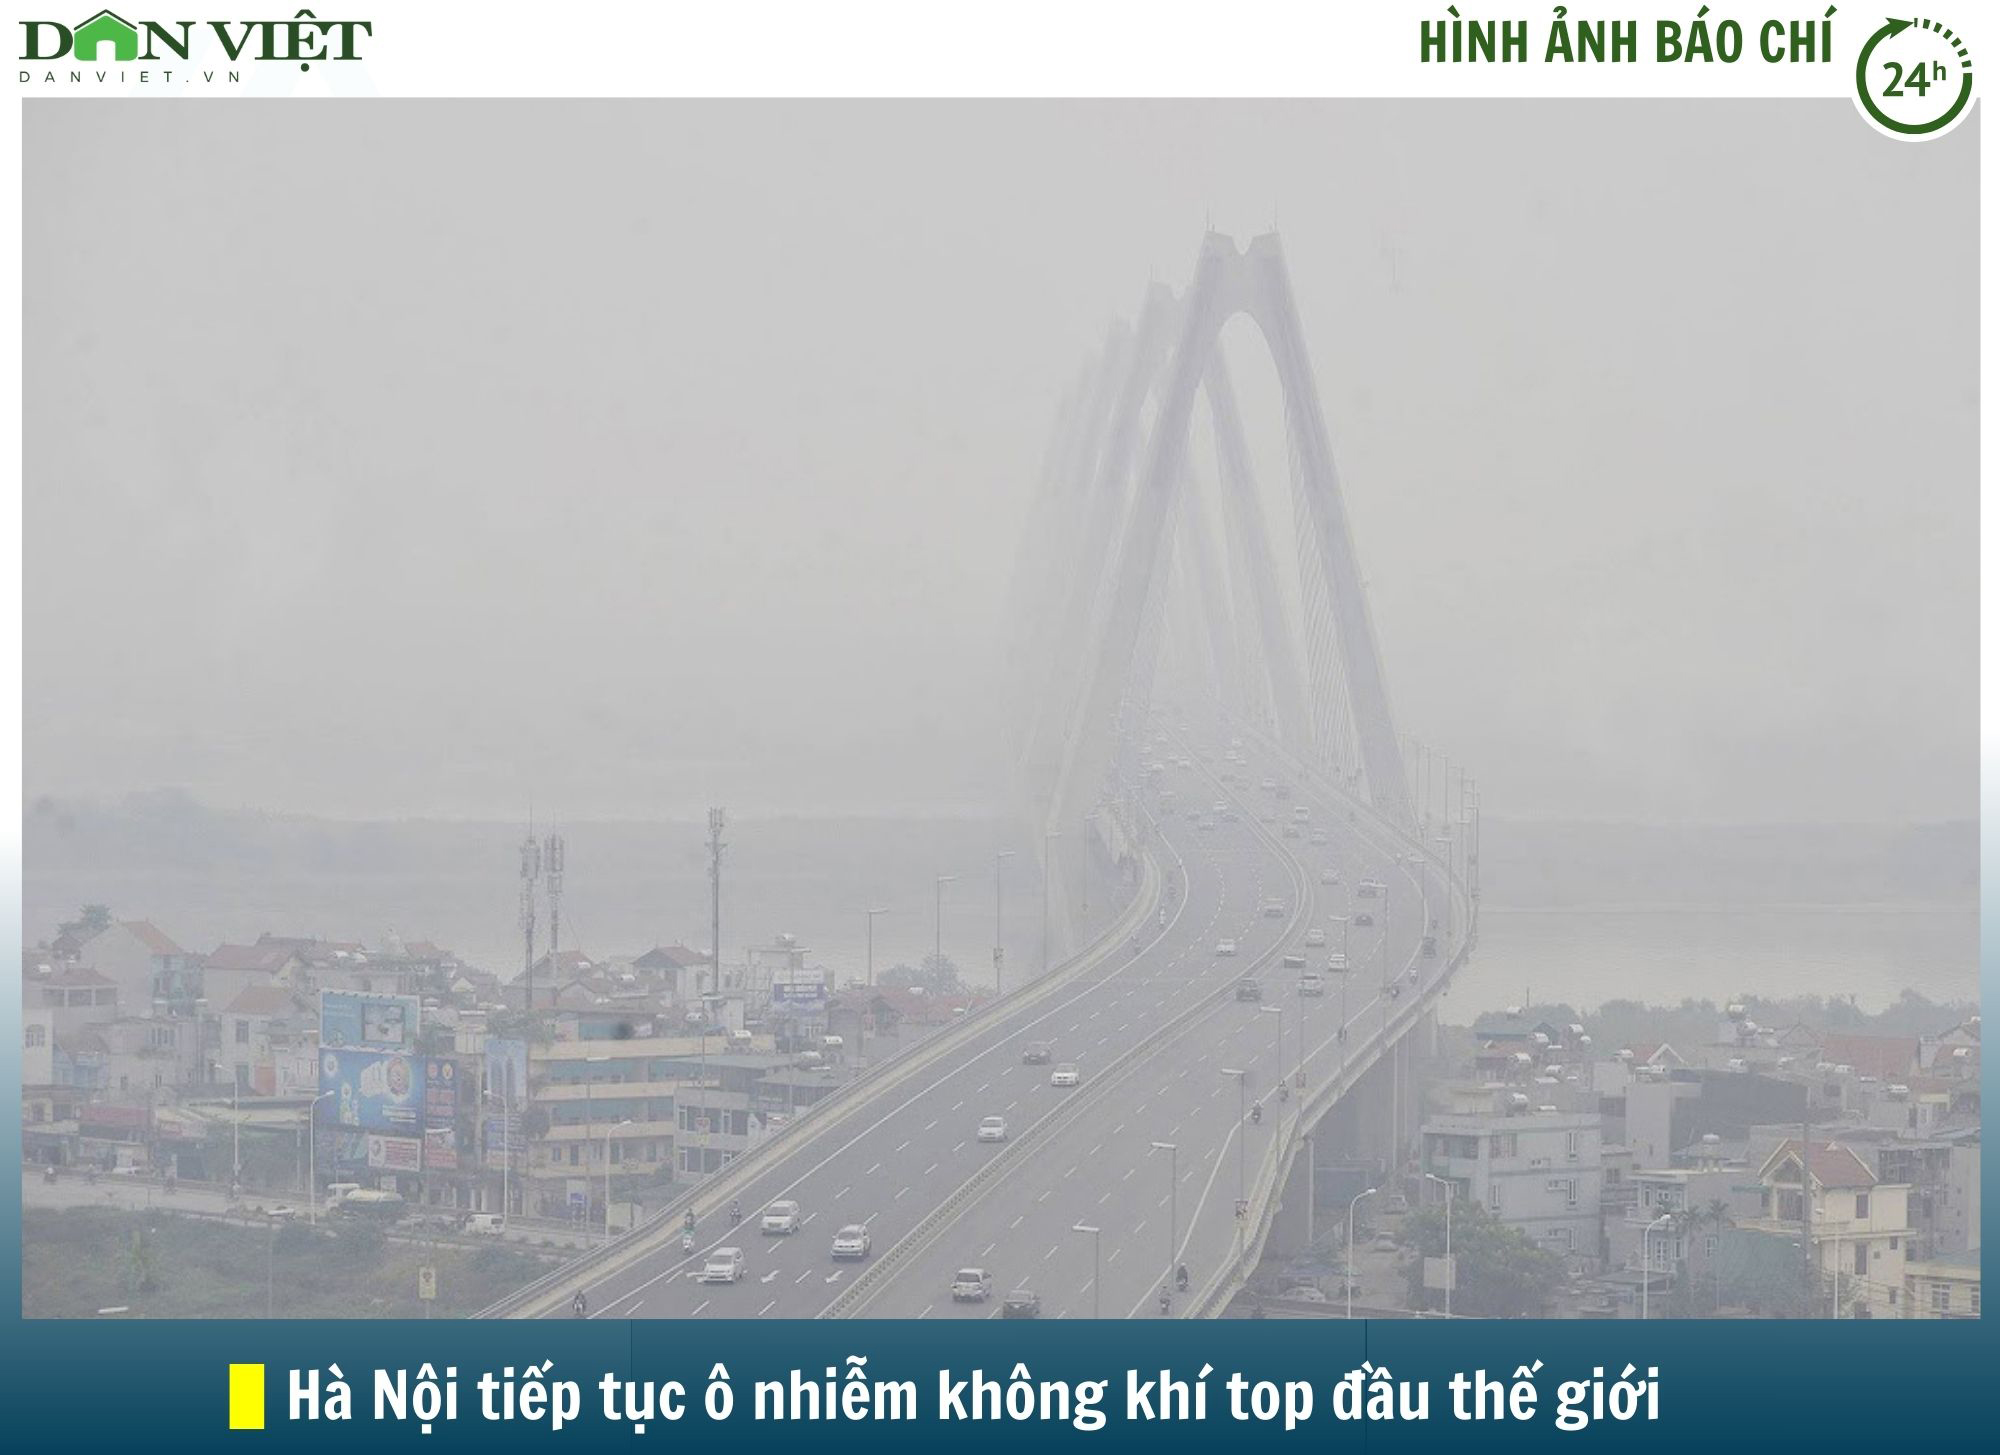 Hình ảnh báo chí 24h: Hà Nội tiếp tục &quot;dẫn đầu&quot; thế giới về chỉ số ô nhiễm không khí - Ảnh 1.